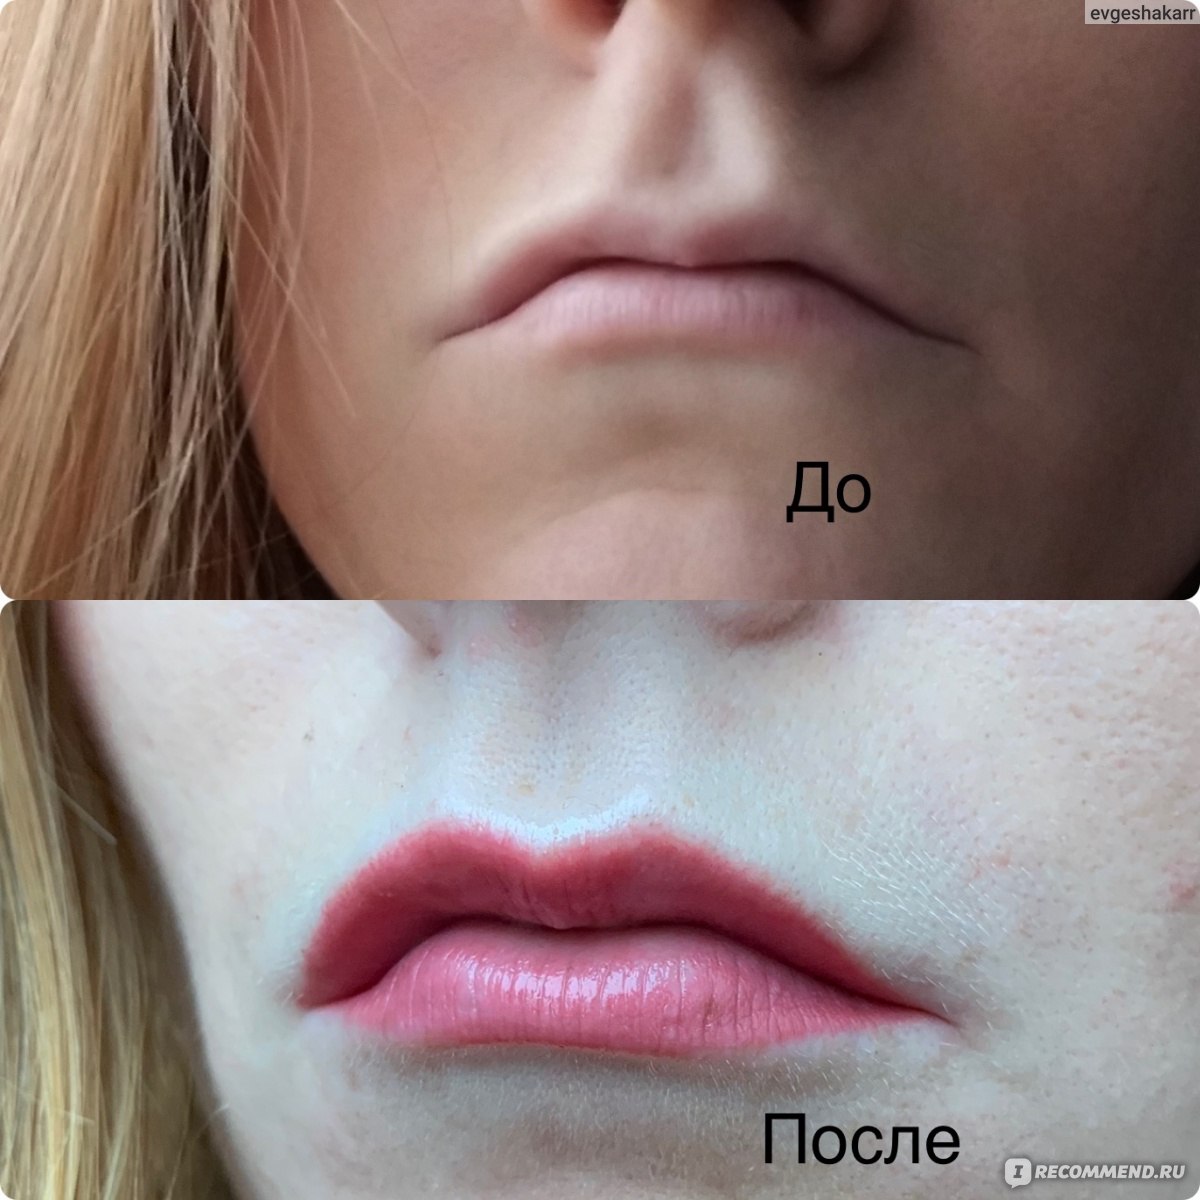 Пудровое напыление губ: фото татуажа до и после, отзывы, плюсы и минусы